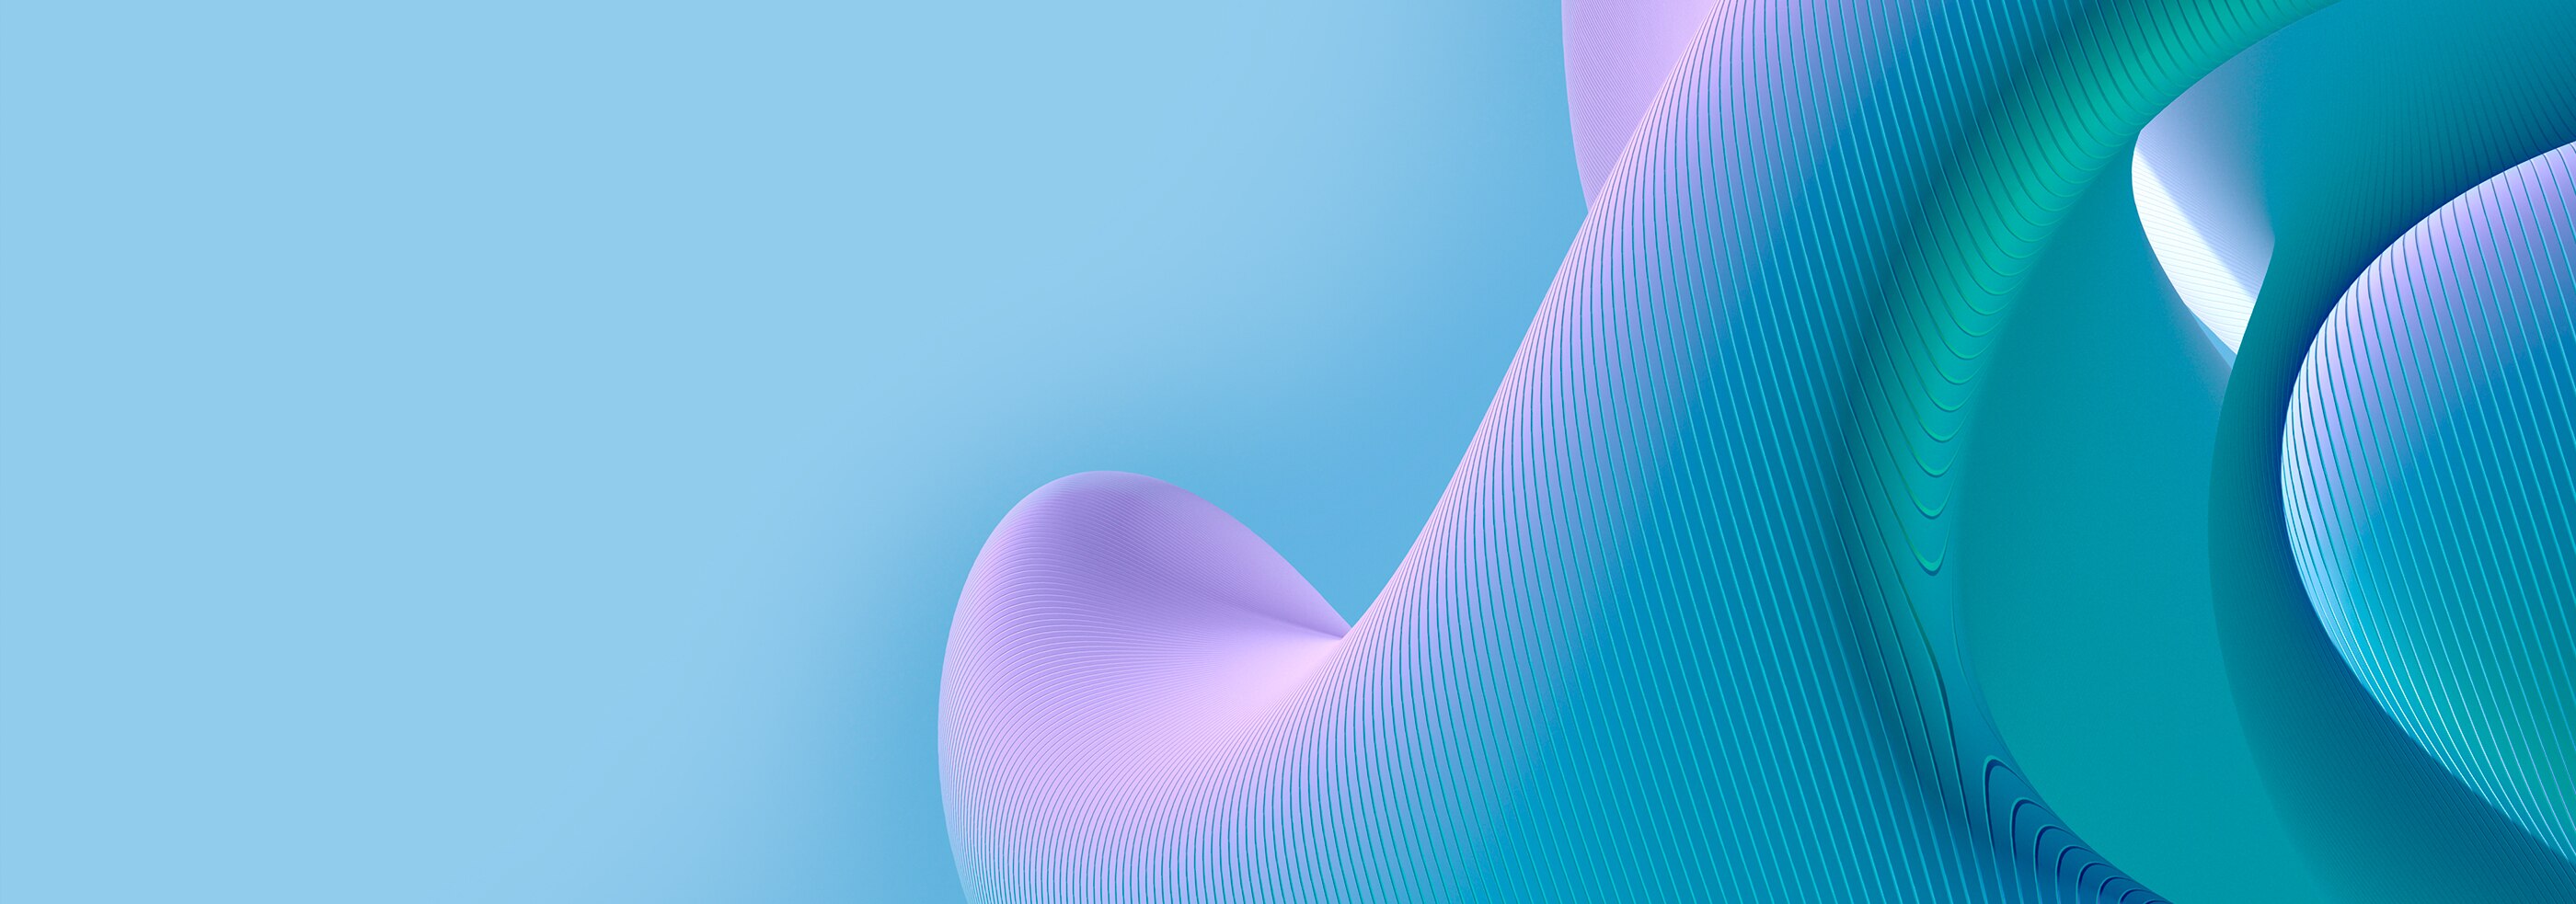 Motif de lignes courbes en 3D sur une surface bleue et violette